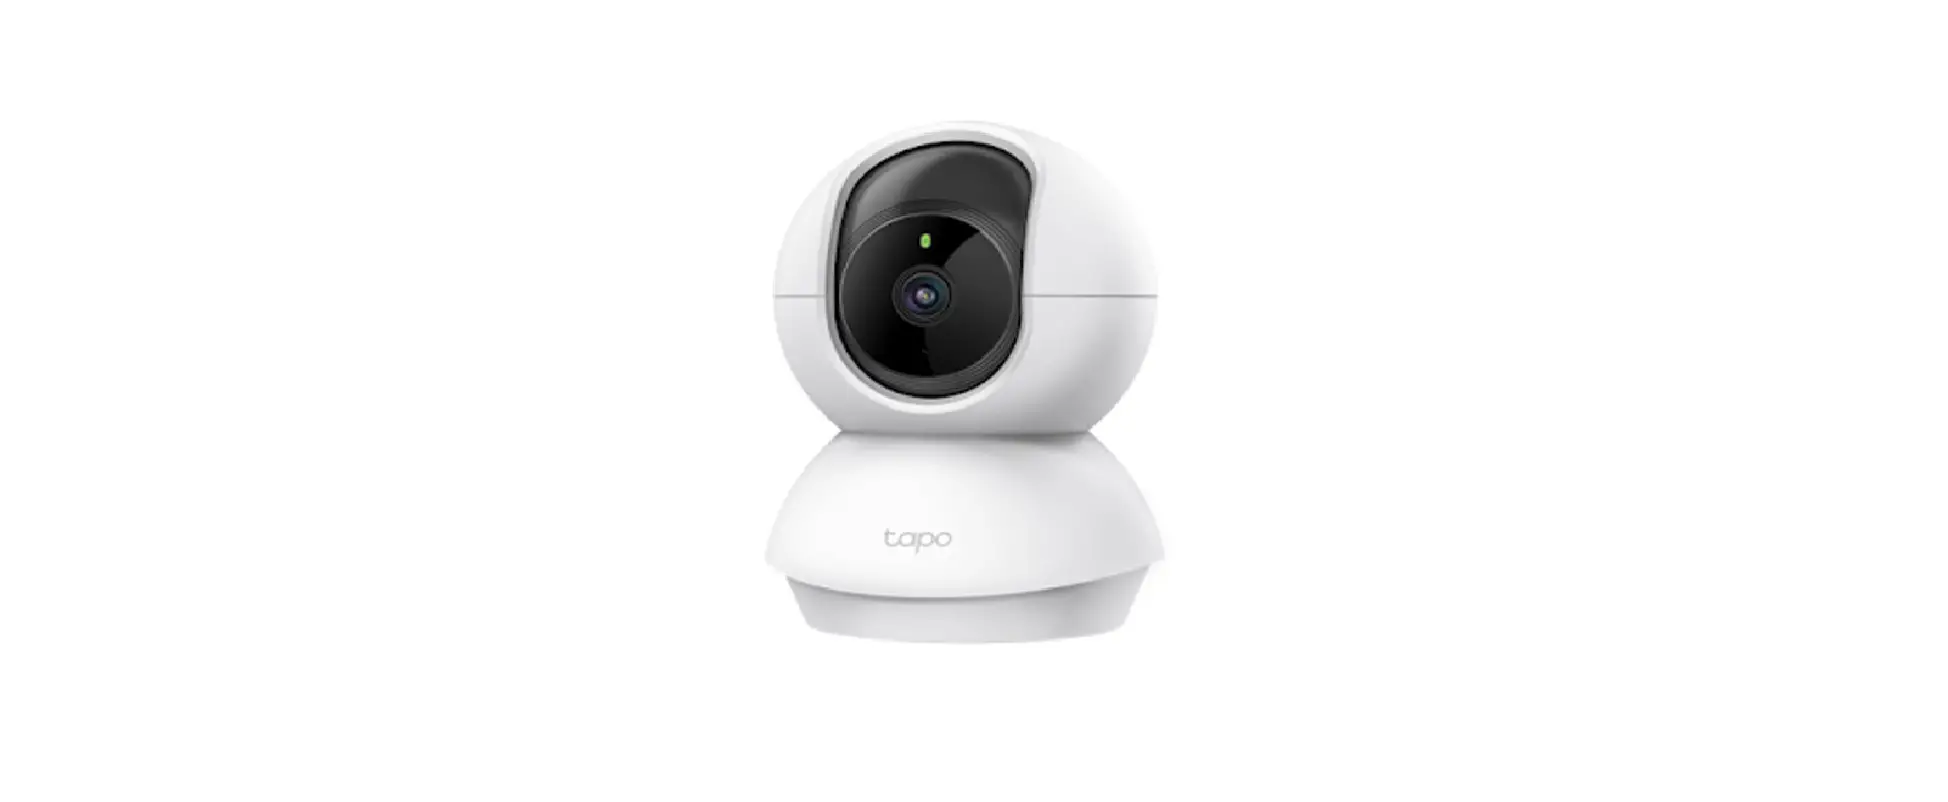 Tapo C500 Outdoor Pan-Tilt Security Wi-Fi Camera